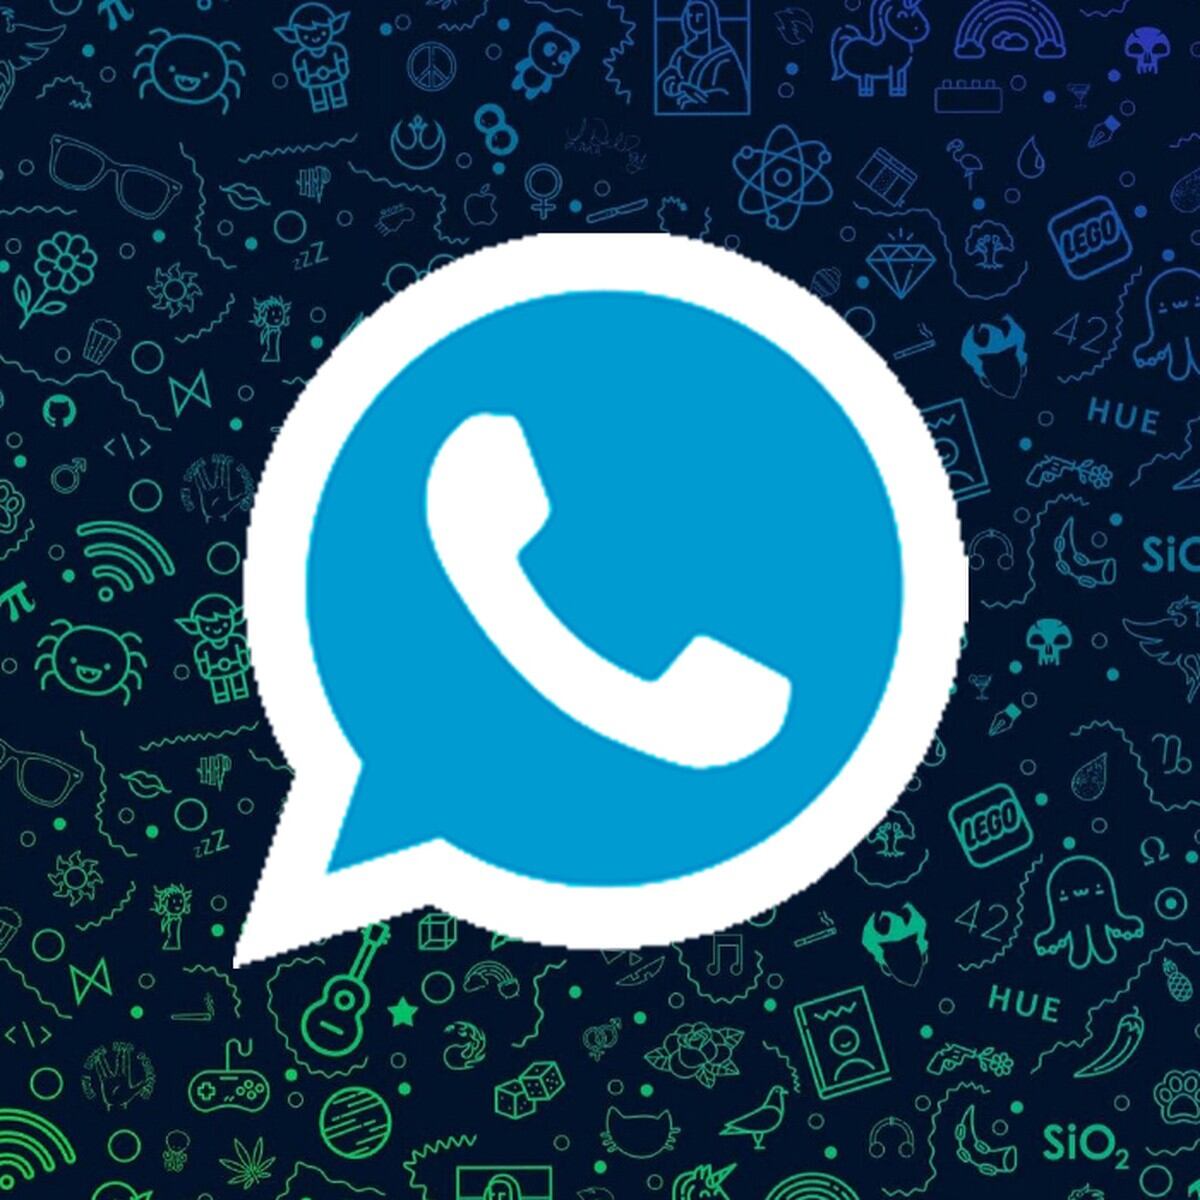 WhatsApp, Cómo crear un GIF propio desde un video, , Aplicaciones, Apps, Smartphone, Celulares, Truco, Tutorial, Viral, NNDA, NNNI, DEPOR-PLAY